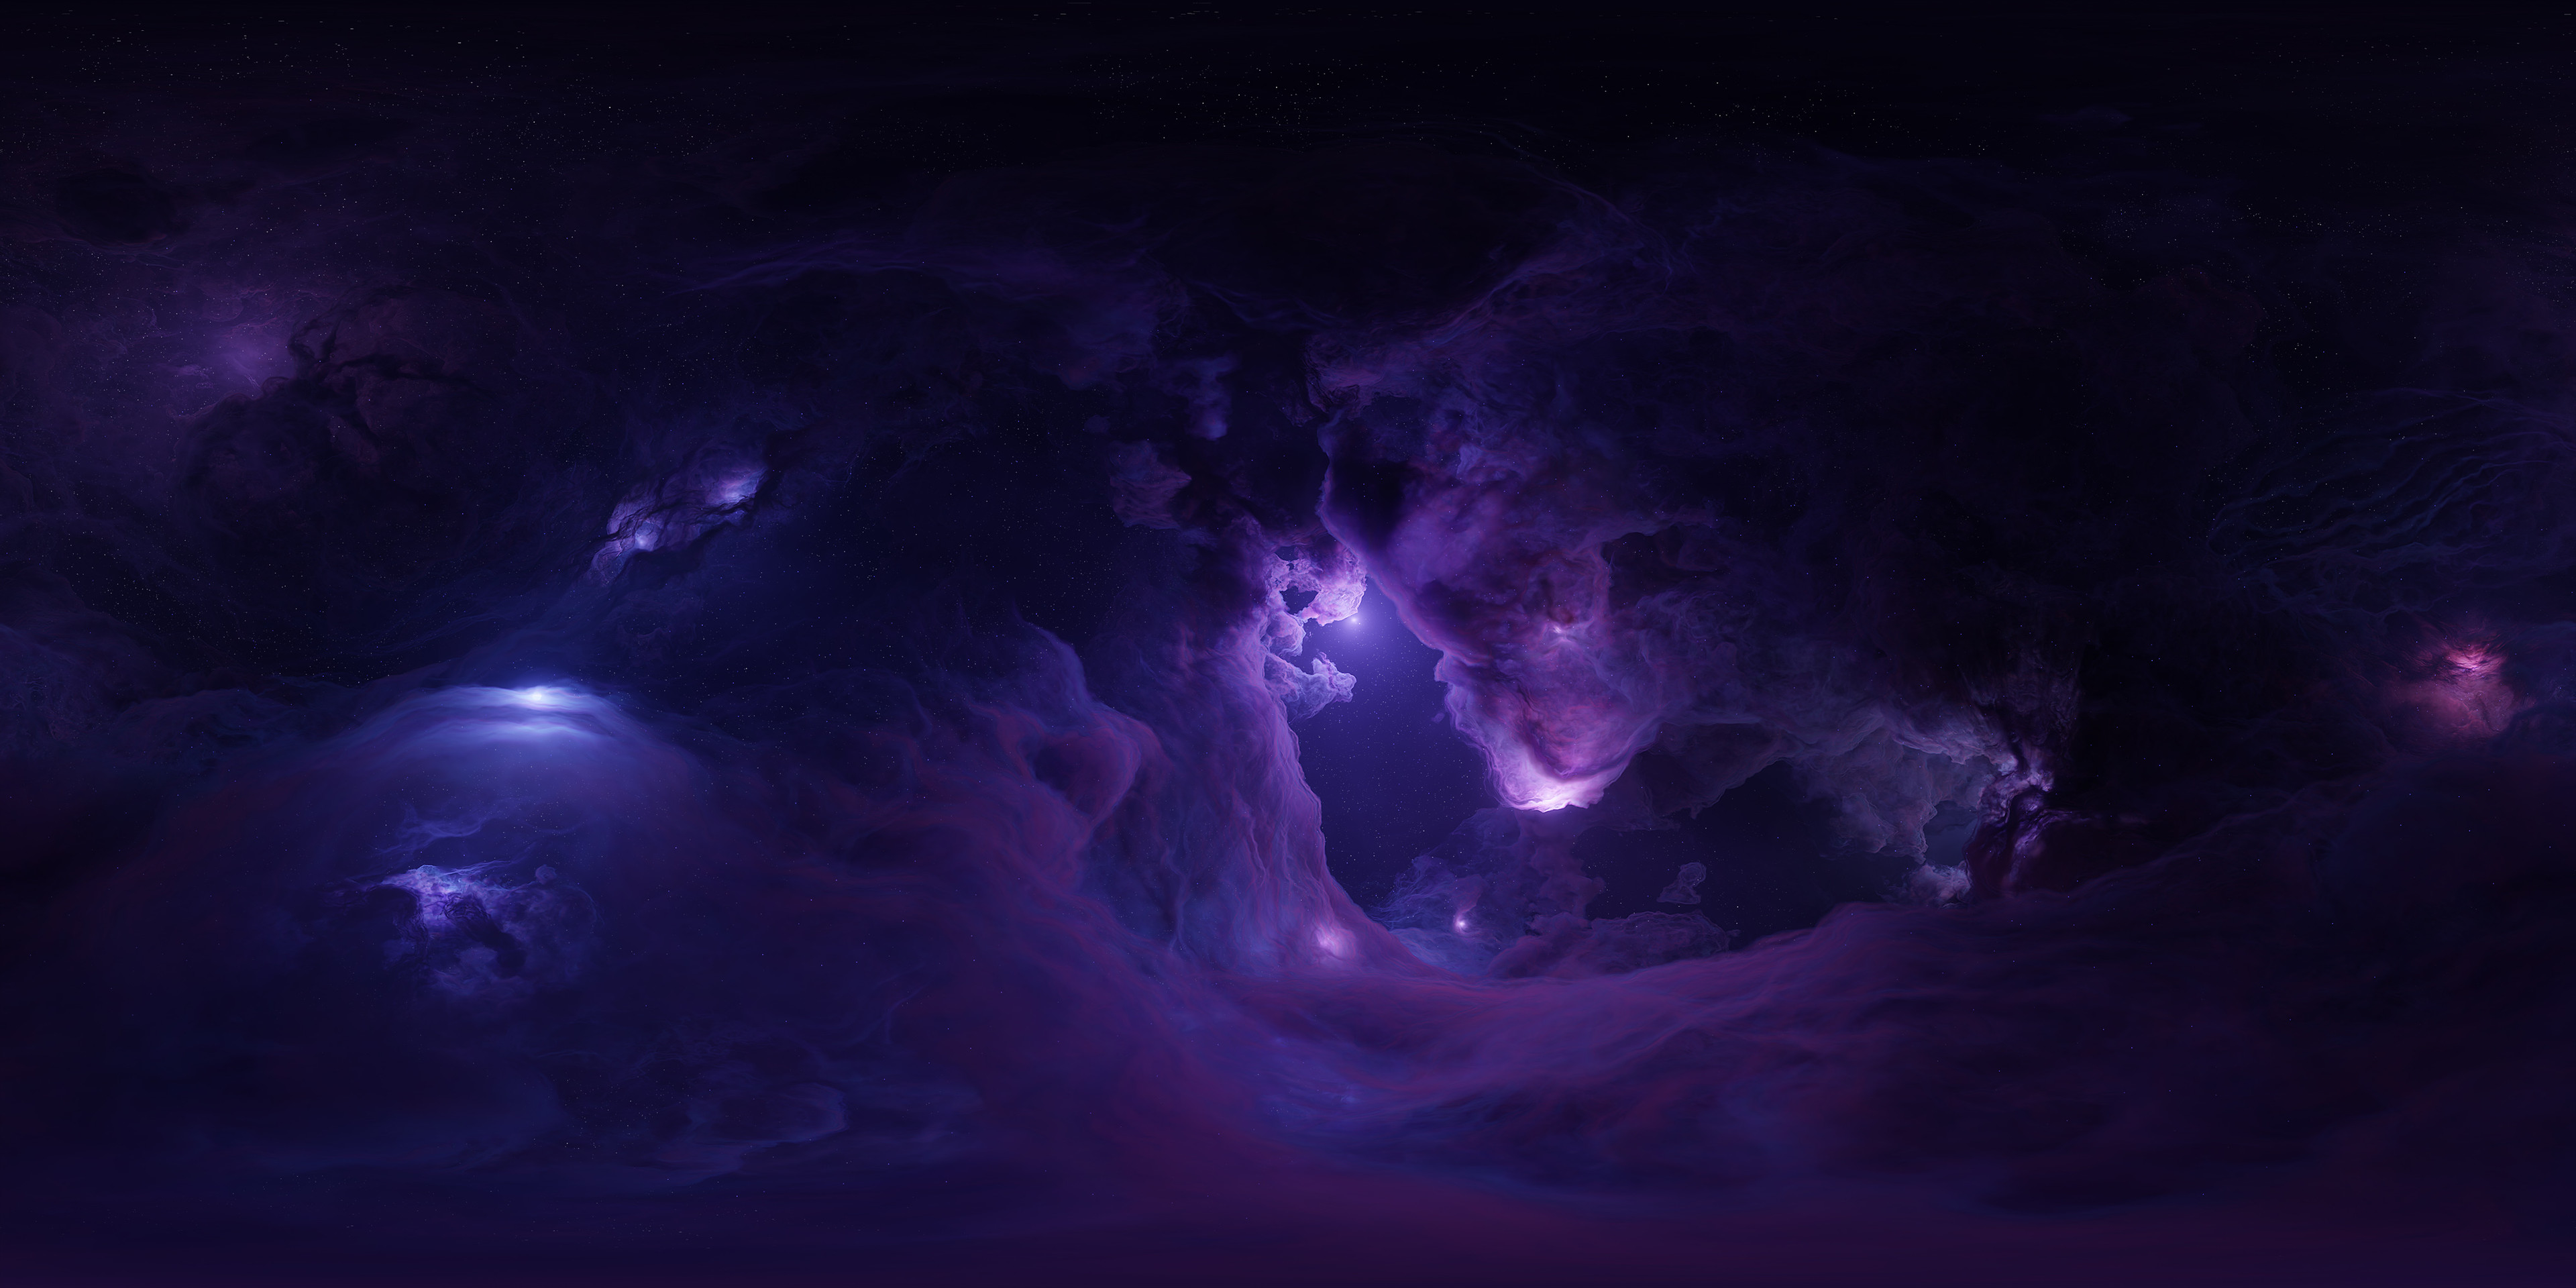 3840x21602019 Nebula Amazing 3840x21602019 Resolution Wallpaper Hd